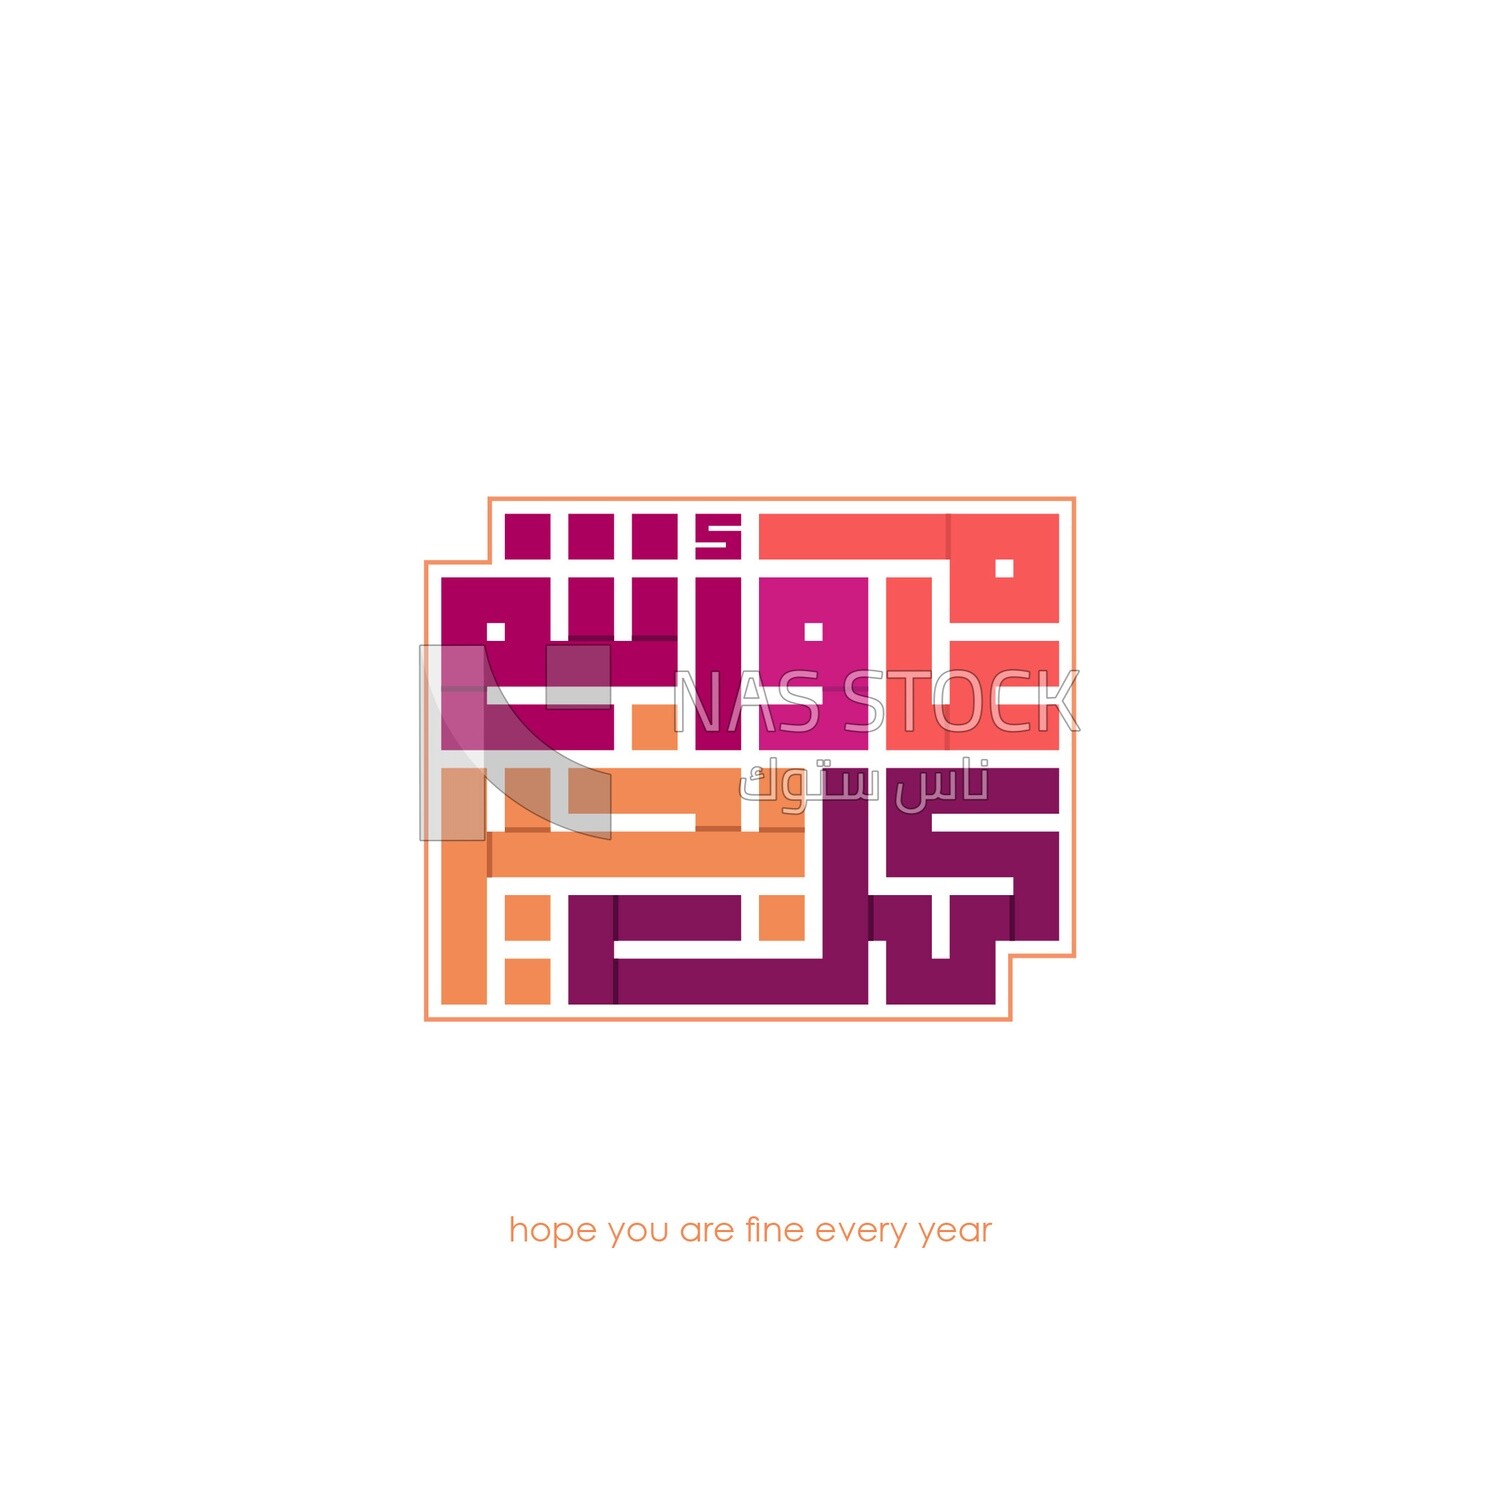 تصميم فيكتور , الخط العربي,تهنئة بالعام الجديد &quot;كل عام وانتم بخير &quot;